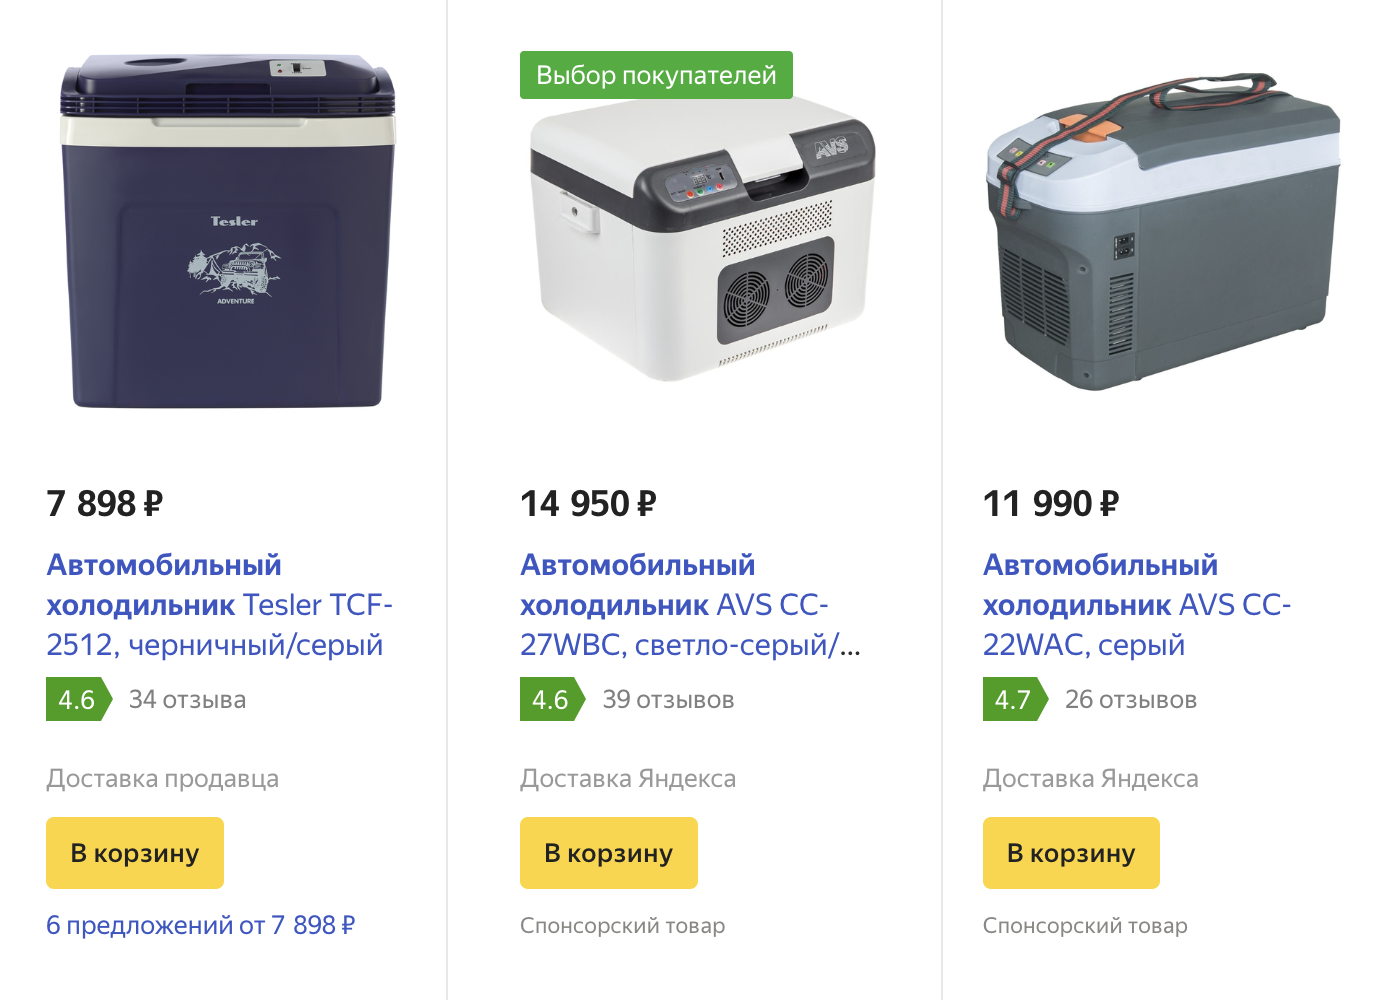 Стоимость автохолодильника зависит от объема и комплектации. У нас максимально простая модель, но некоторые заряжаются от аккумулятора или, скажем, имеют защиту от уровня разряда аккумуляторной батареи. Источник: market.yandex.ru